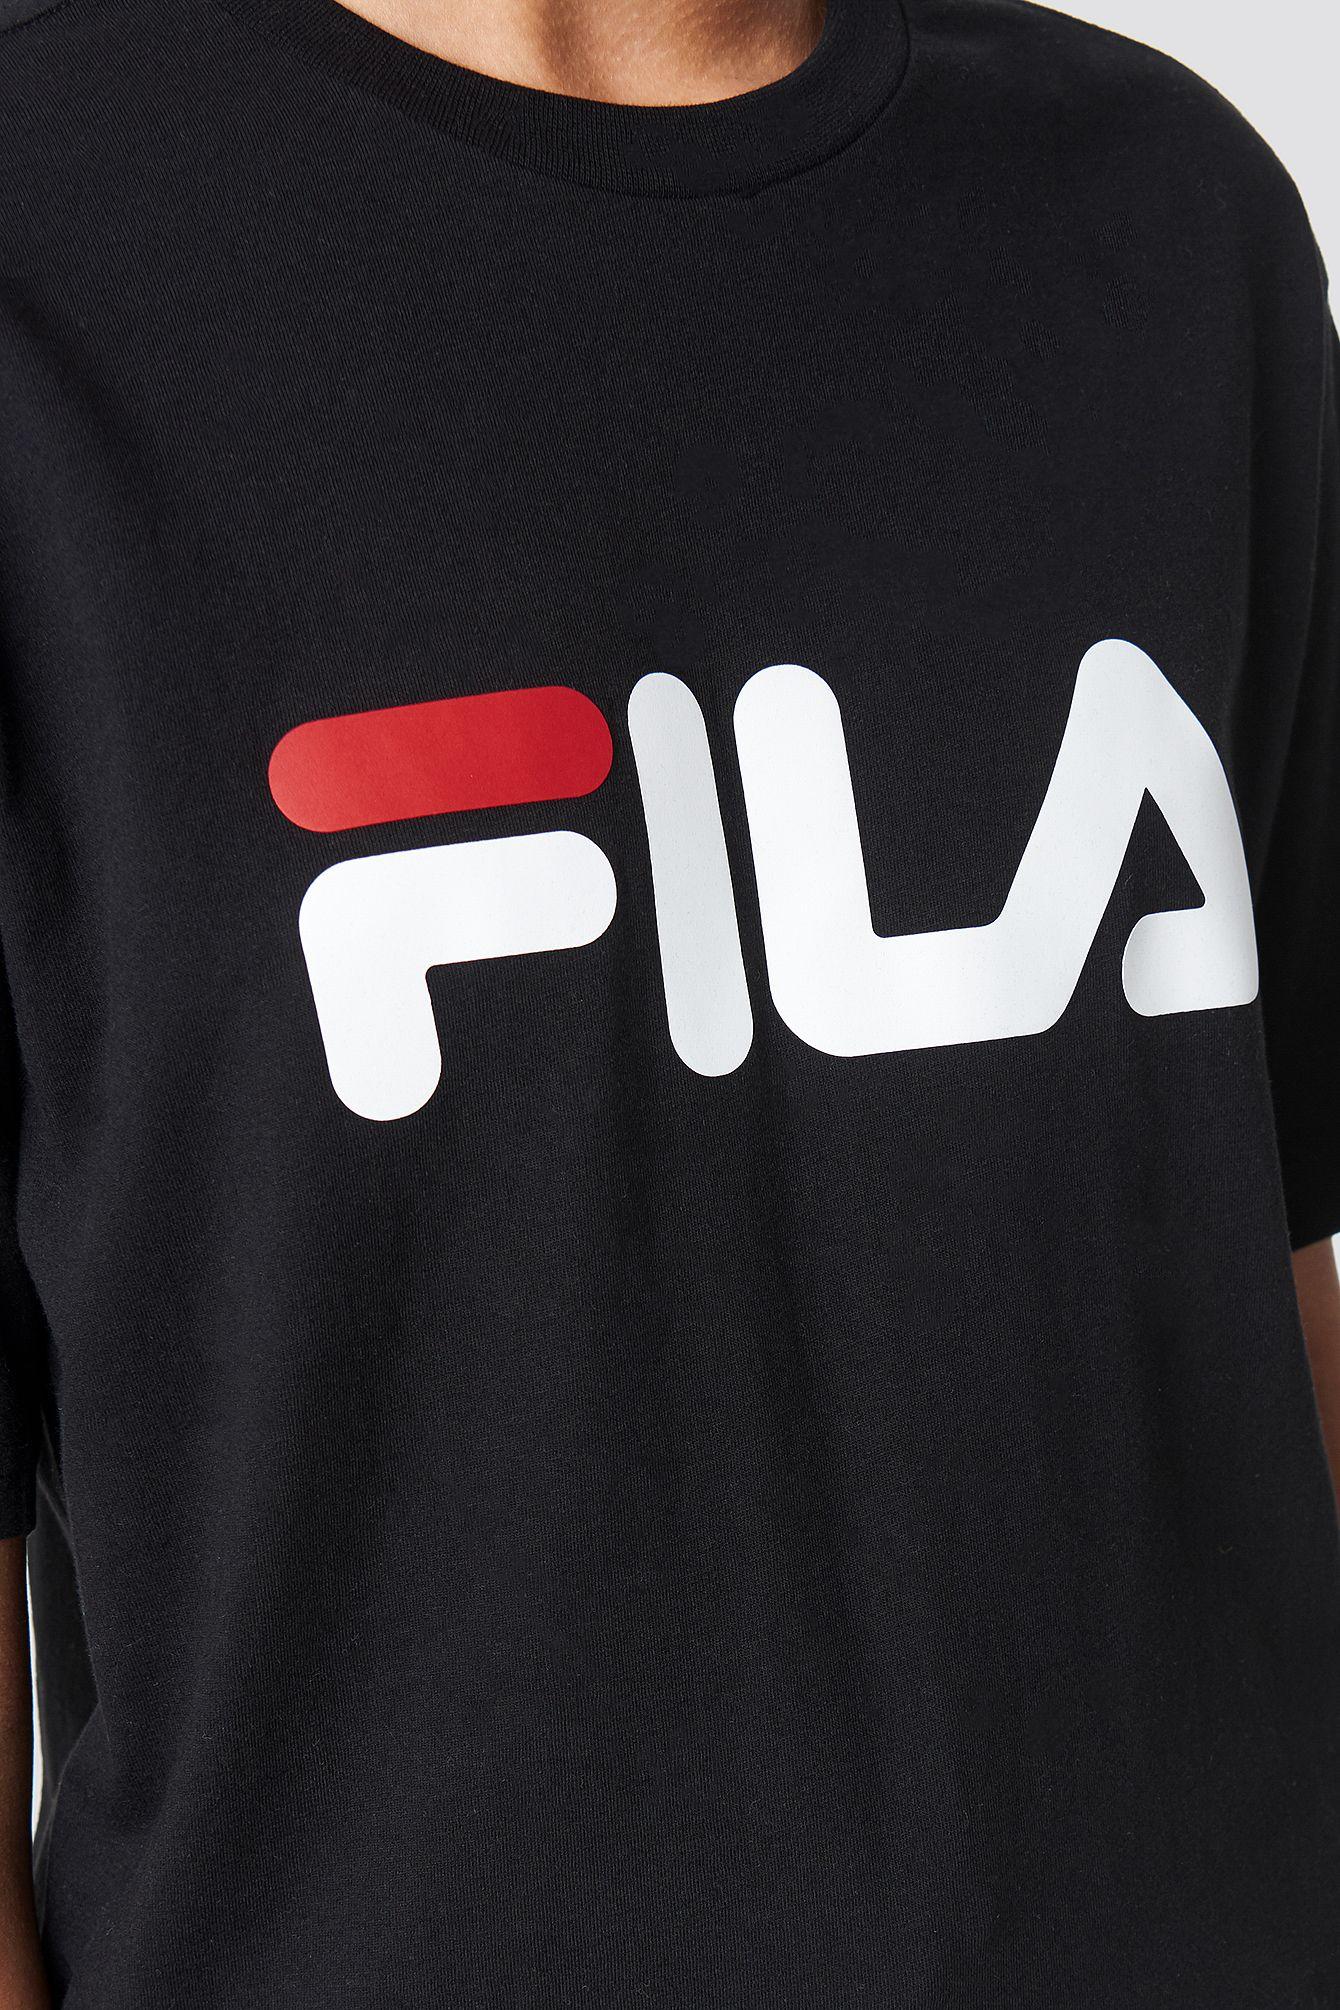 Old Fila Logo - FILA | Shop FILA Shoes, Sweaters & Tees | na-kd.com